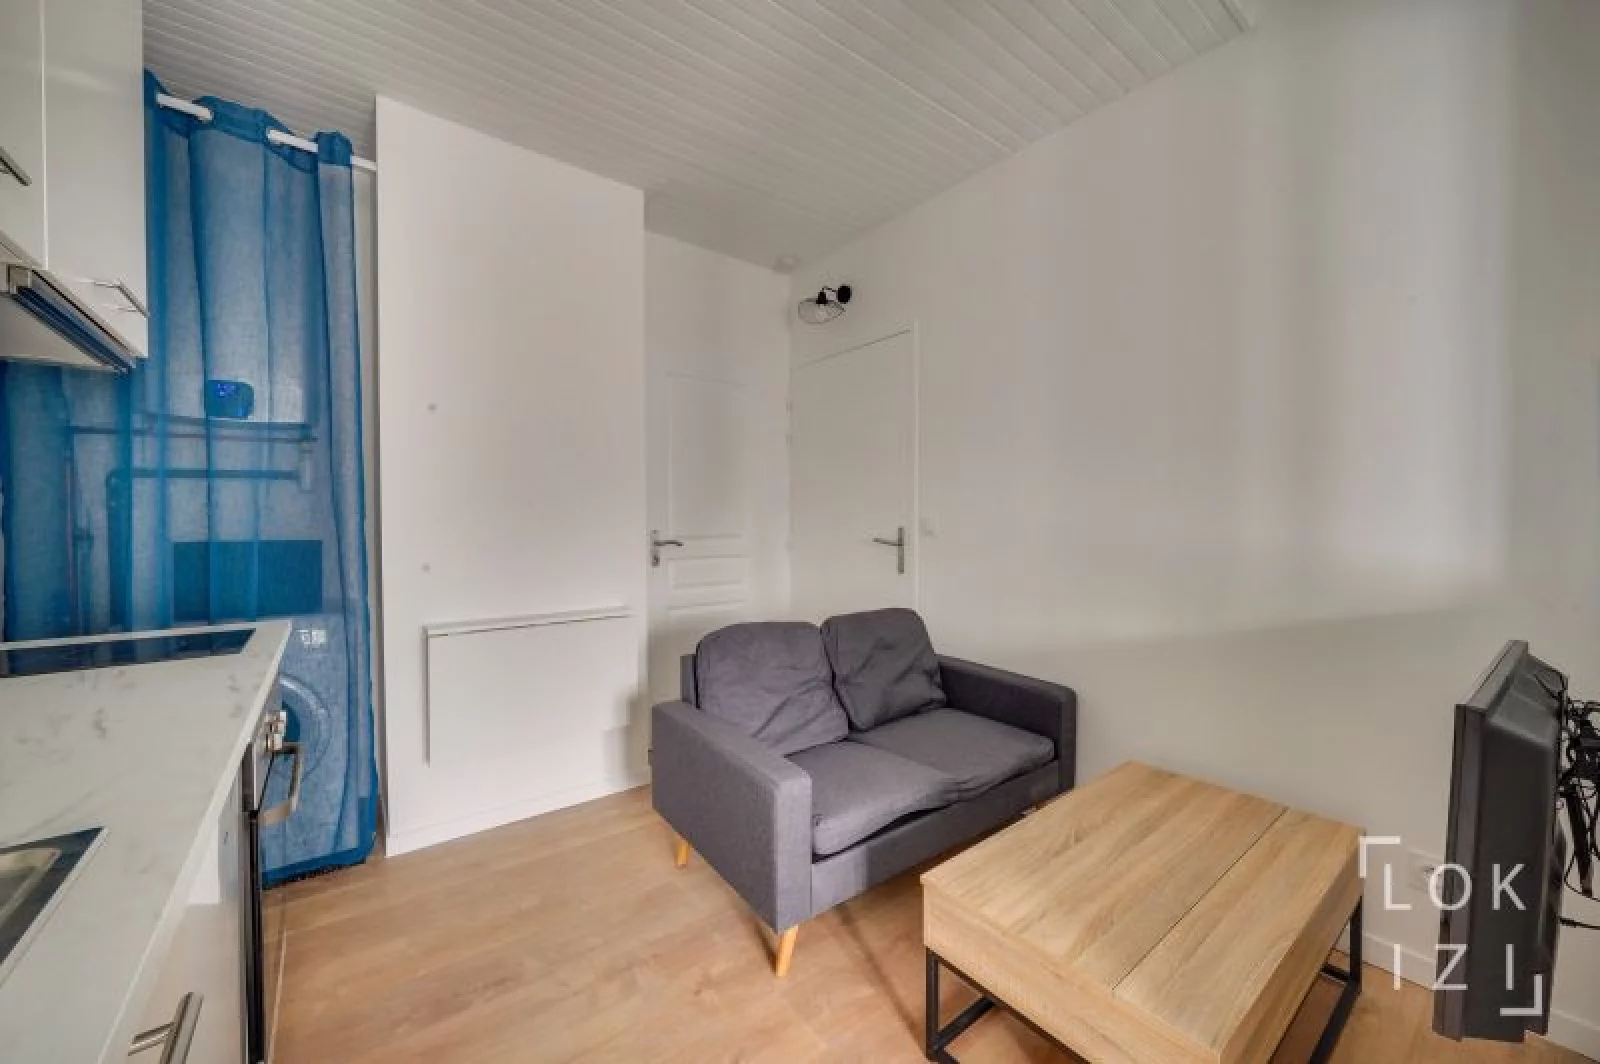 Location studio meublé 17m² (Bordeaux - Victoire / Nansouty)